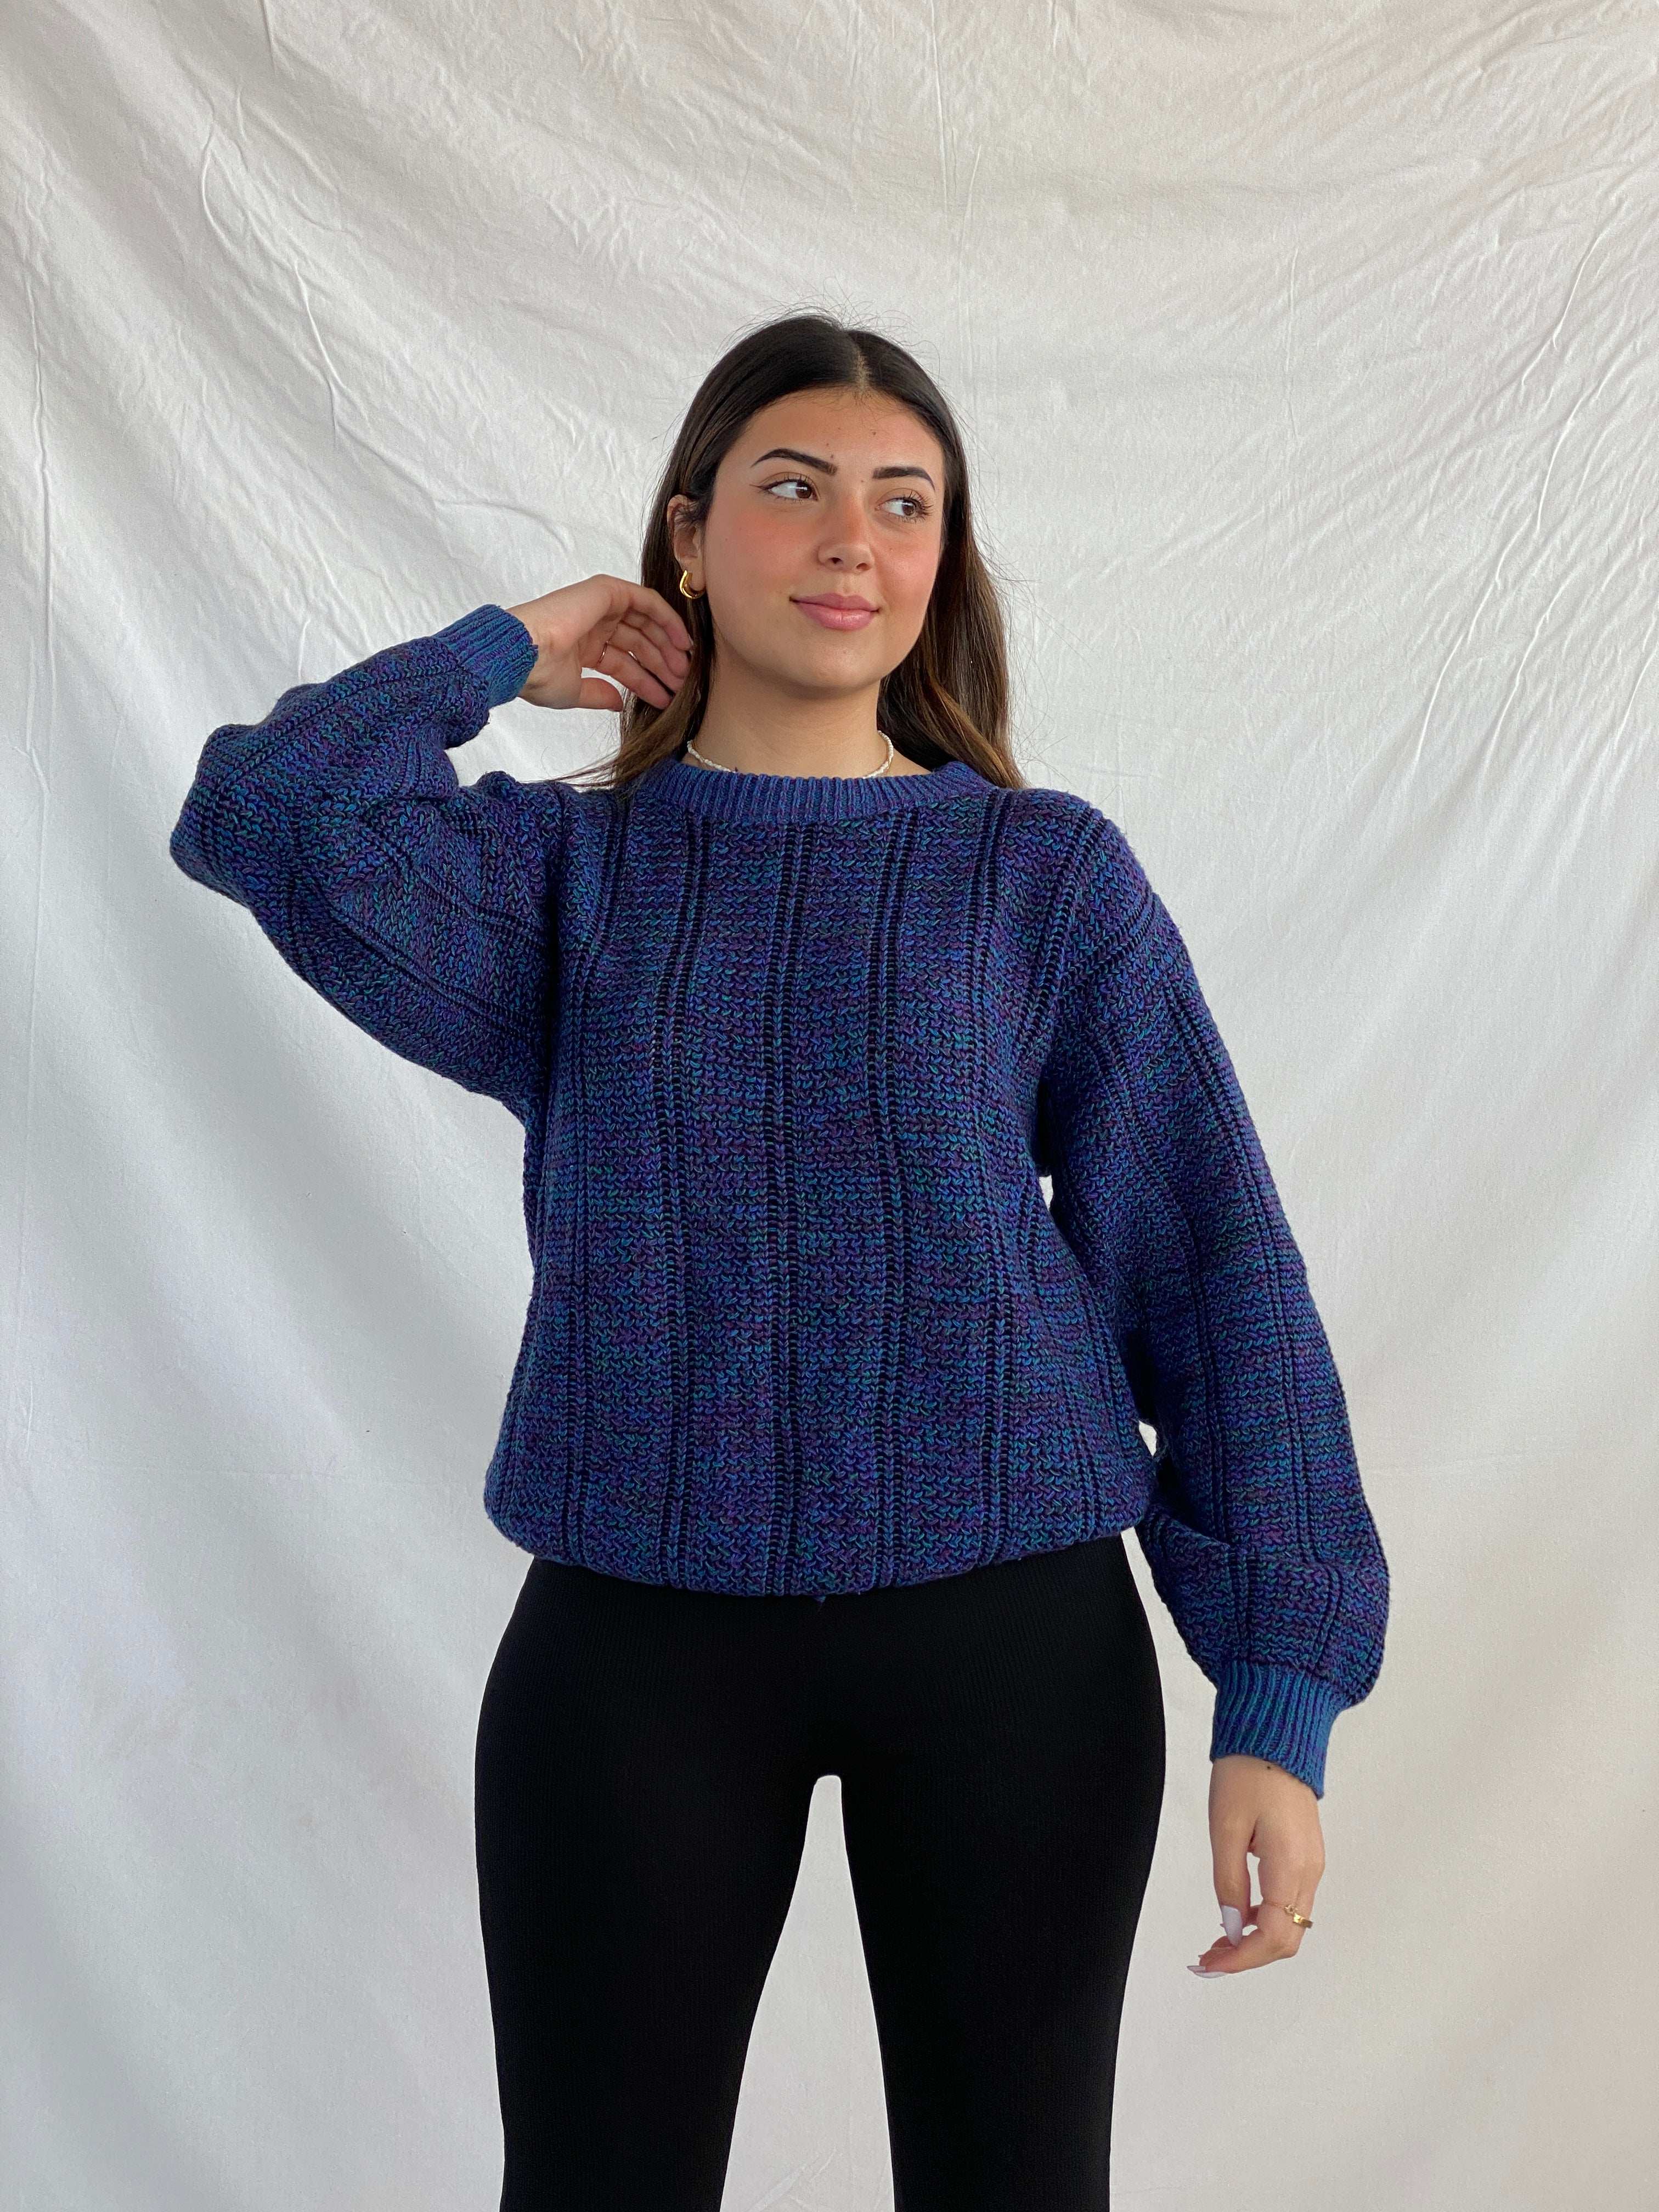 Vintage APPARATUS Knitted Sweater - Balagan Vintage Sweater 90s, Juana, knitted sweater, NEW IN, oversized sweater, printed sweater, sweater